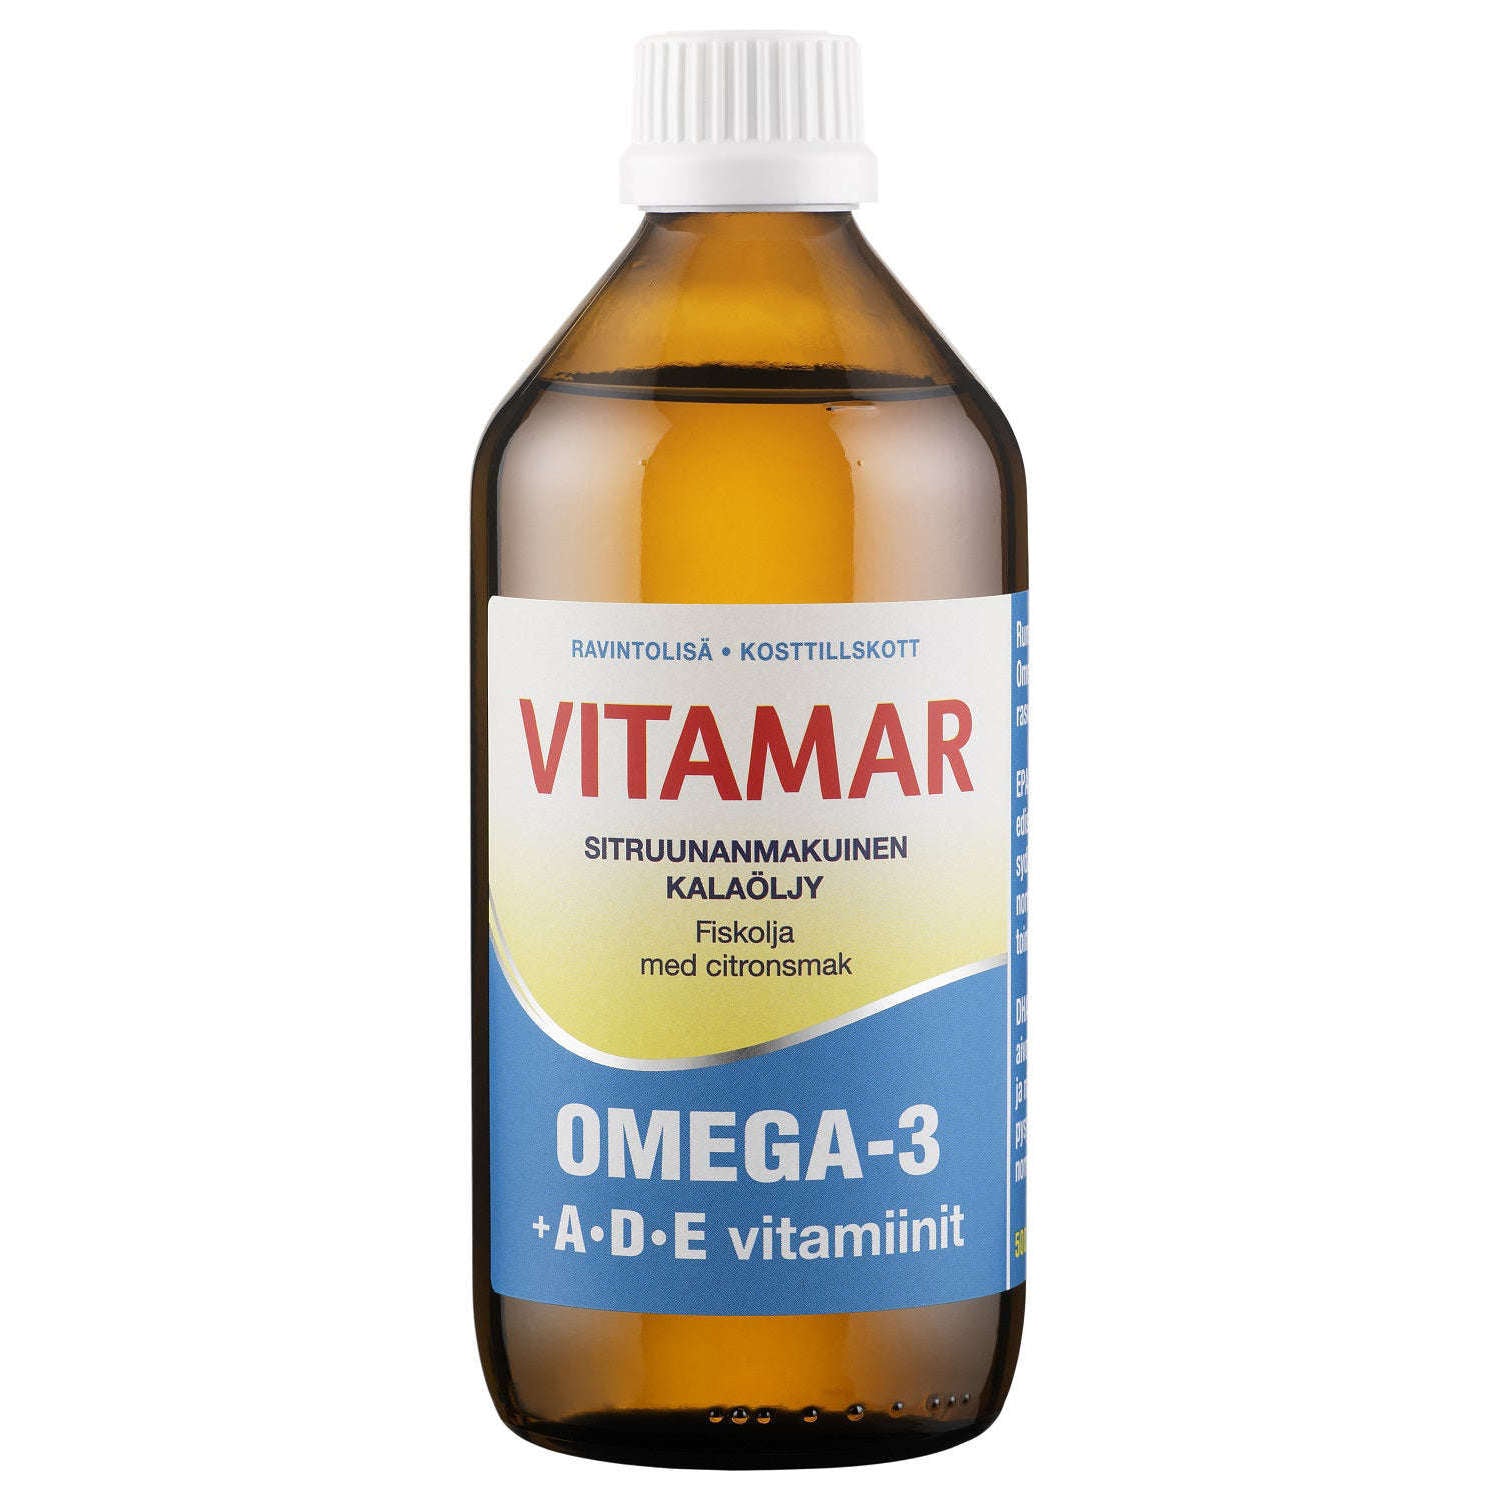 Vitamar Omega-3 + ADE